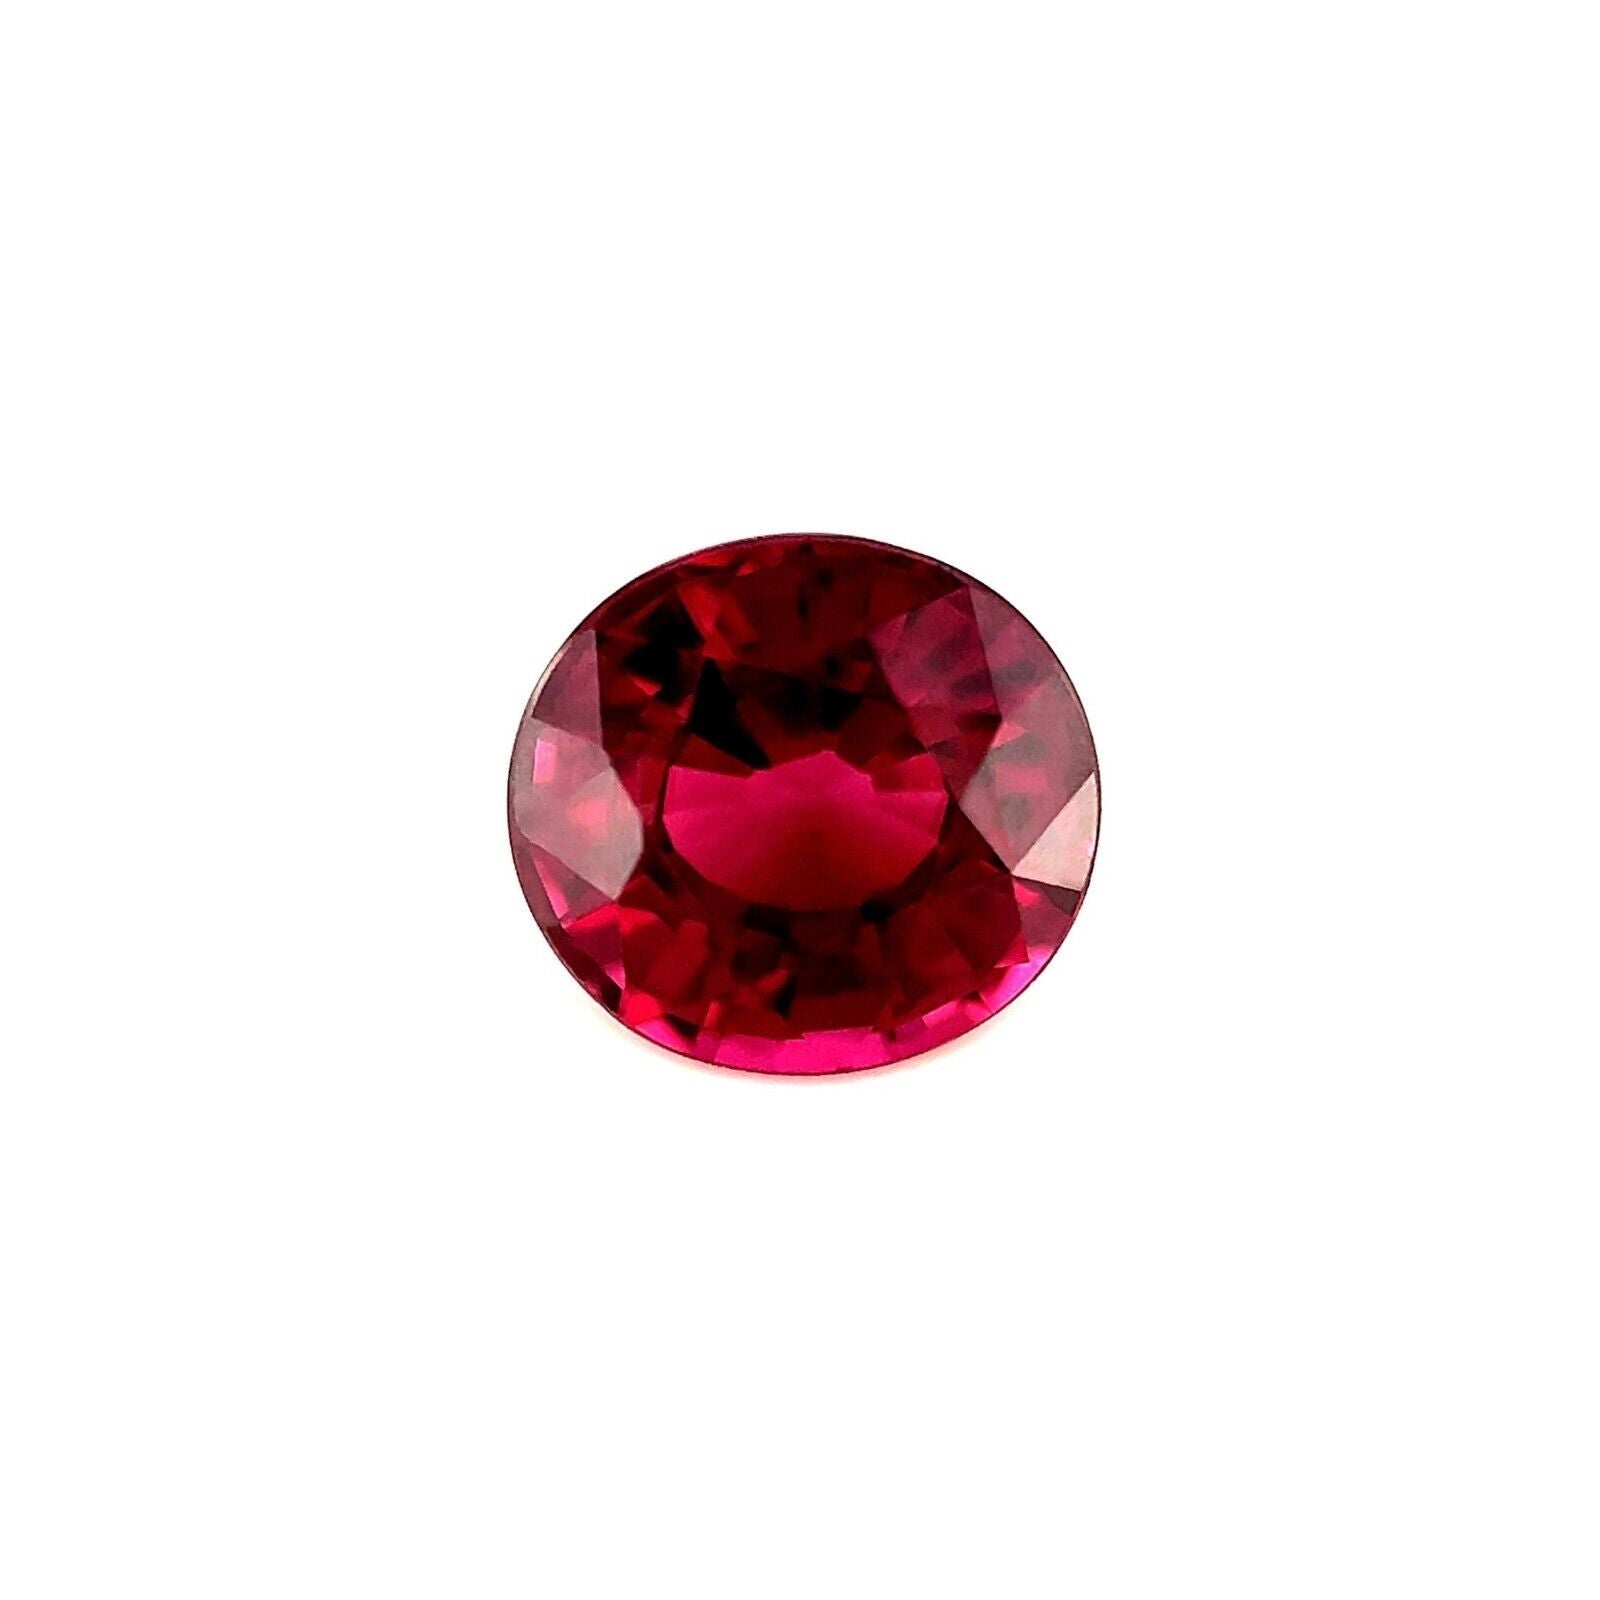 1.89 Carat Pink Purple Natural Rhodolite Garnet Oval Cut Loose Gemstone VS For Sale